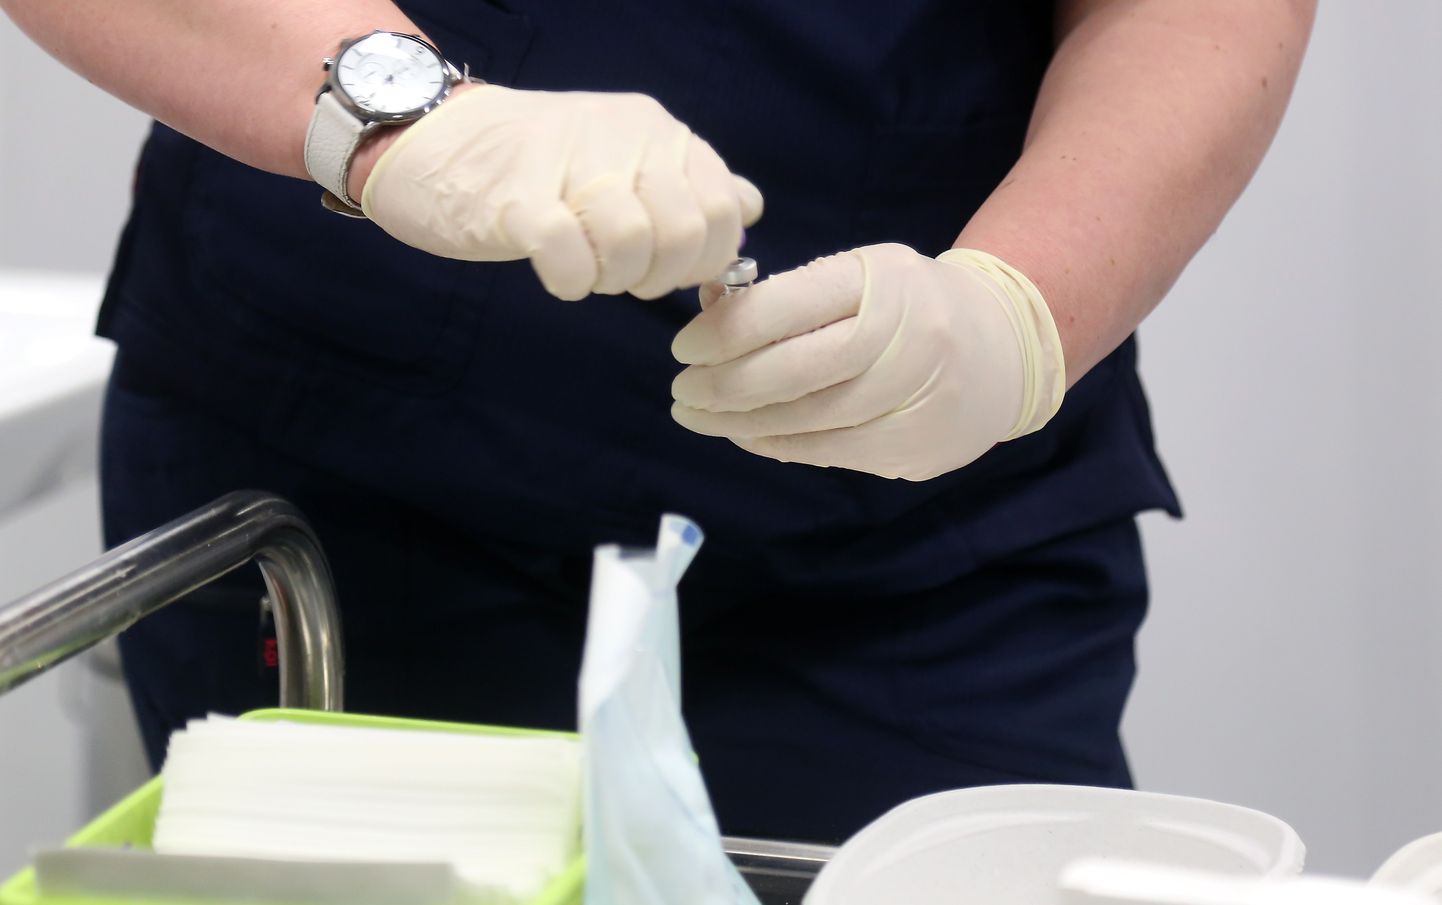 Rīgas Austrumu klīniskās universitātes slimnīcas stacionārā "Gaiļezers" tiek uzsākta farmācijas uzņēmumu "Pfizer" un "BioNTech" ražotās vakcīnas pret Covid-19 injicēšana. Ilustratīvs attēls.